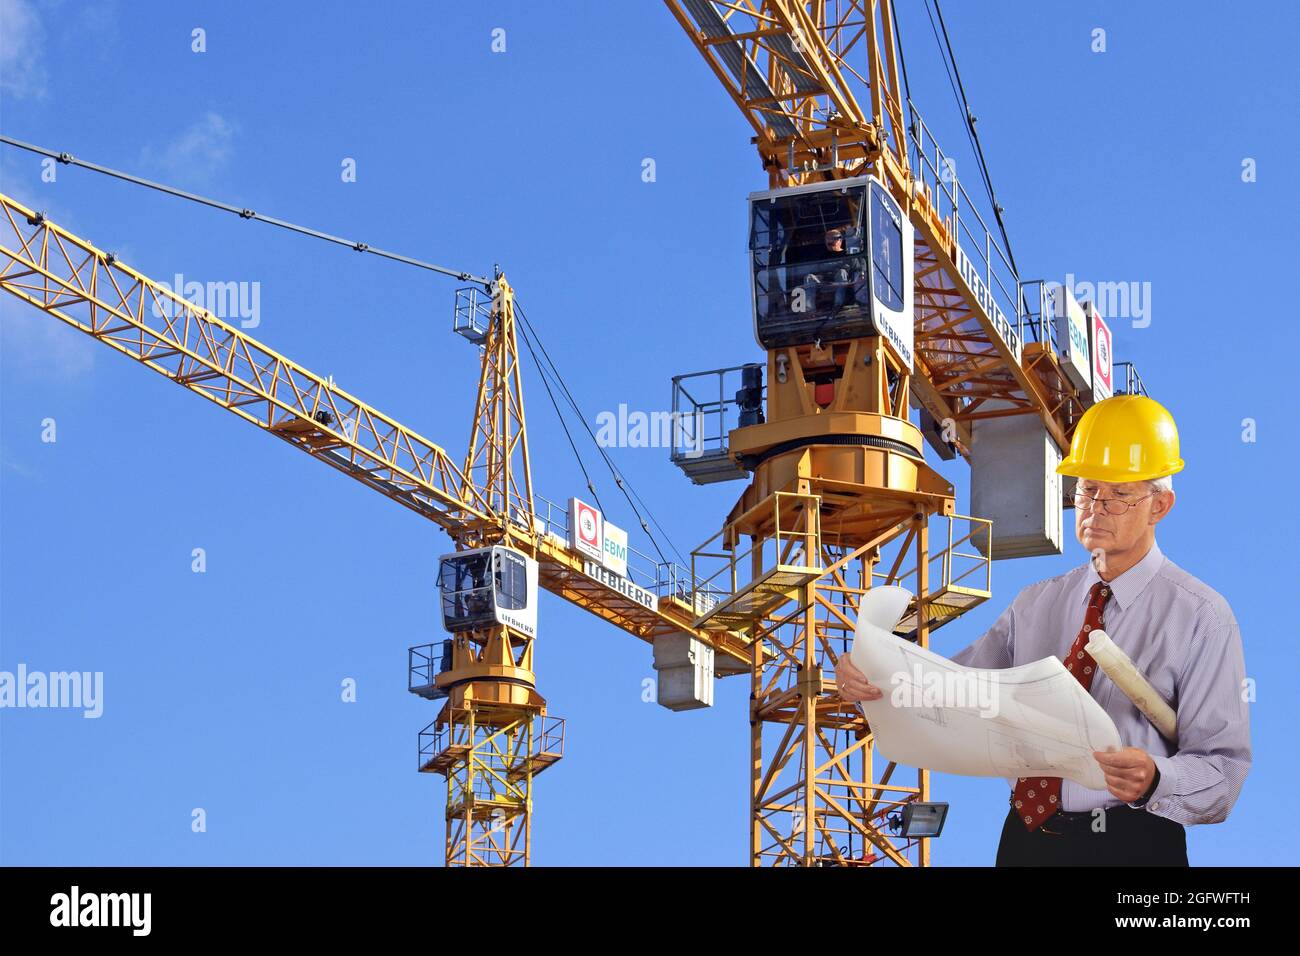 Architekt mit Bauplan und Hut, Turmdrehkrane im Hintergrund Stockfoto